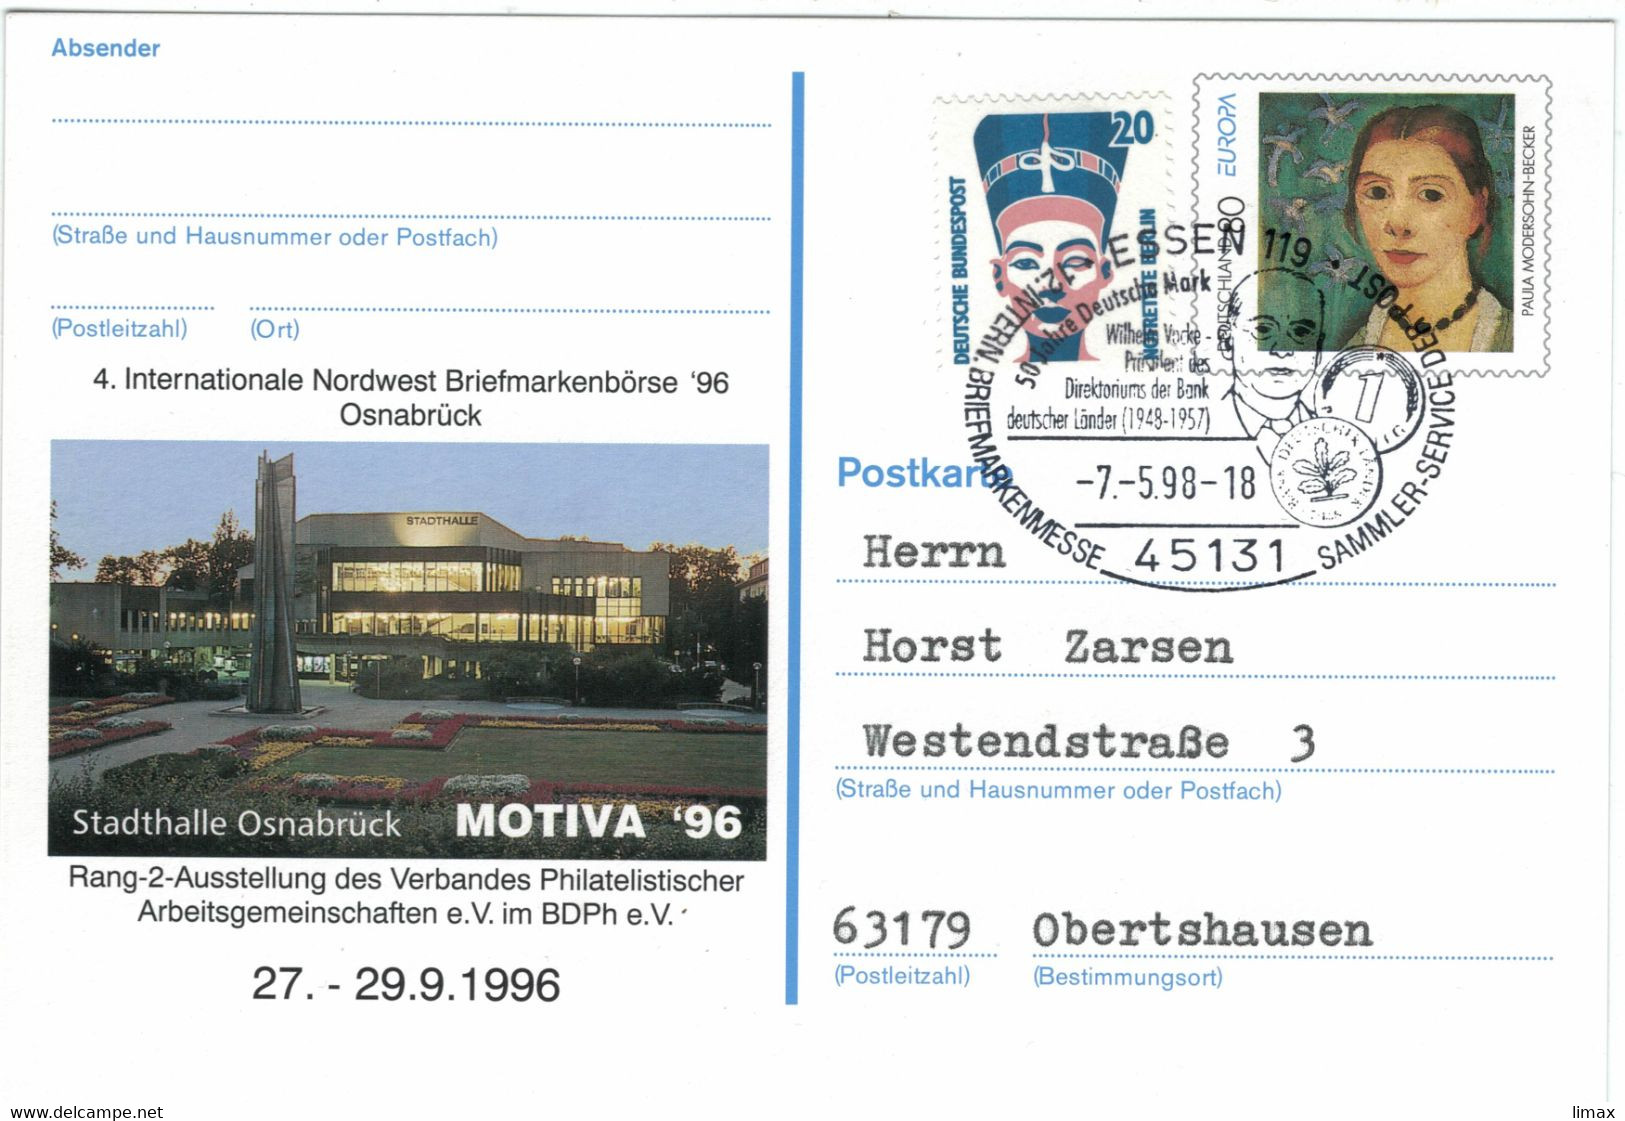 Wilhelm Vocke Banker Präsident Bank Deutscher Länder - BIZ Basel - Essen 1998 Modersohn-Becker Nofretete - Private Postcards - Used